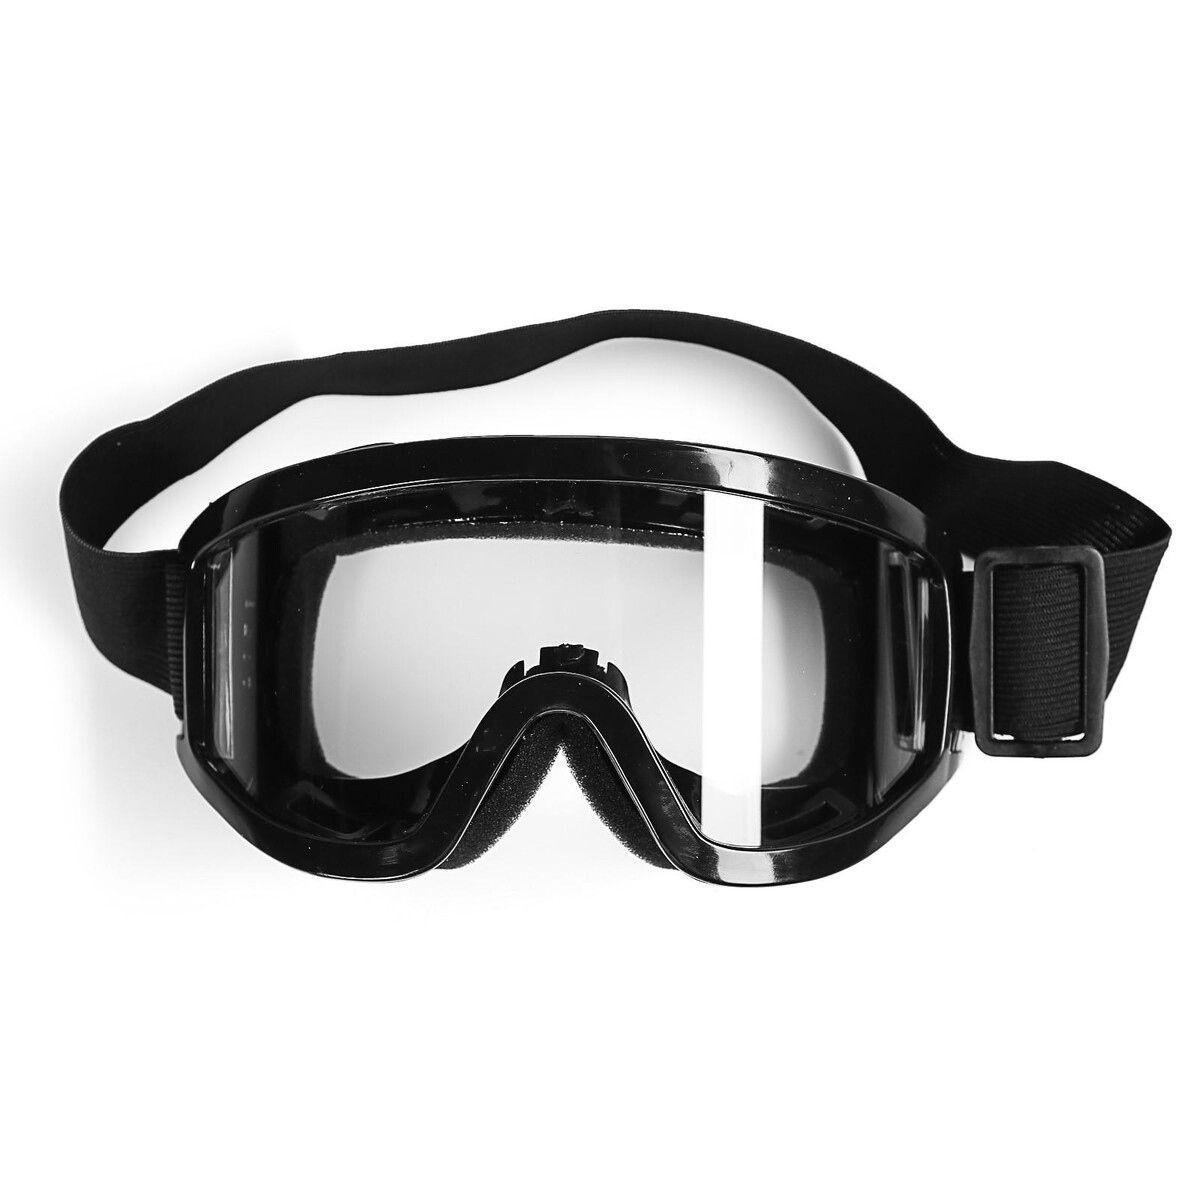 Очки-маска для езды на мототехнике, стекло прозрачное, цвет черный очки маска со съемной защитой носа стекло прозрачное черные